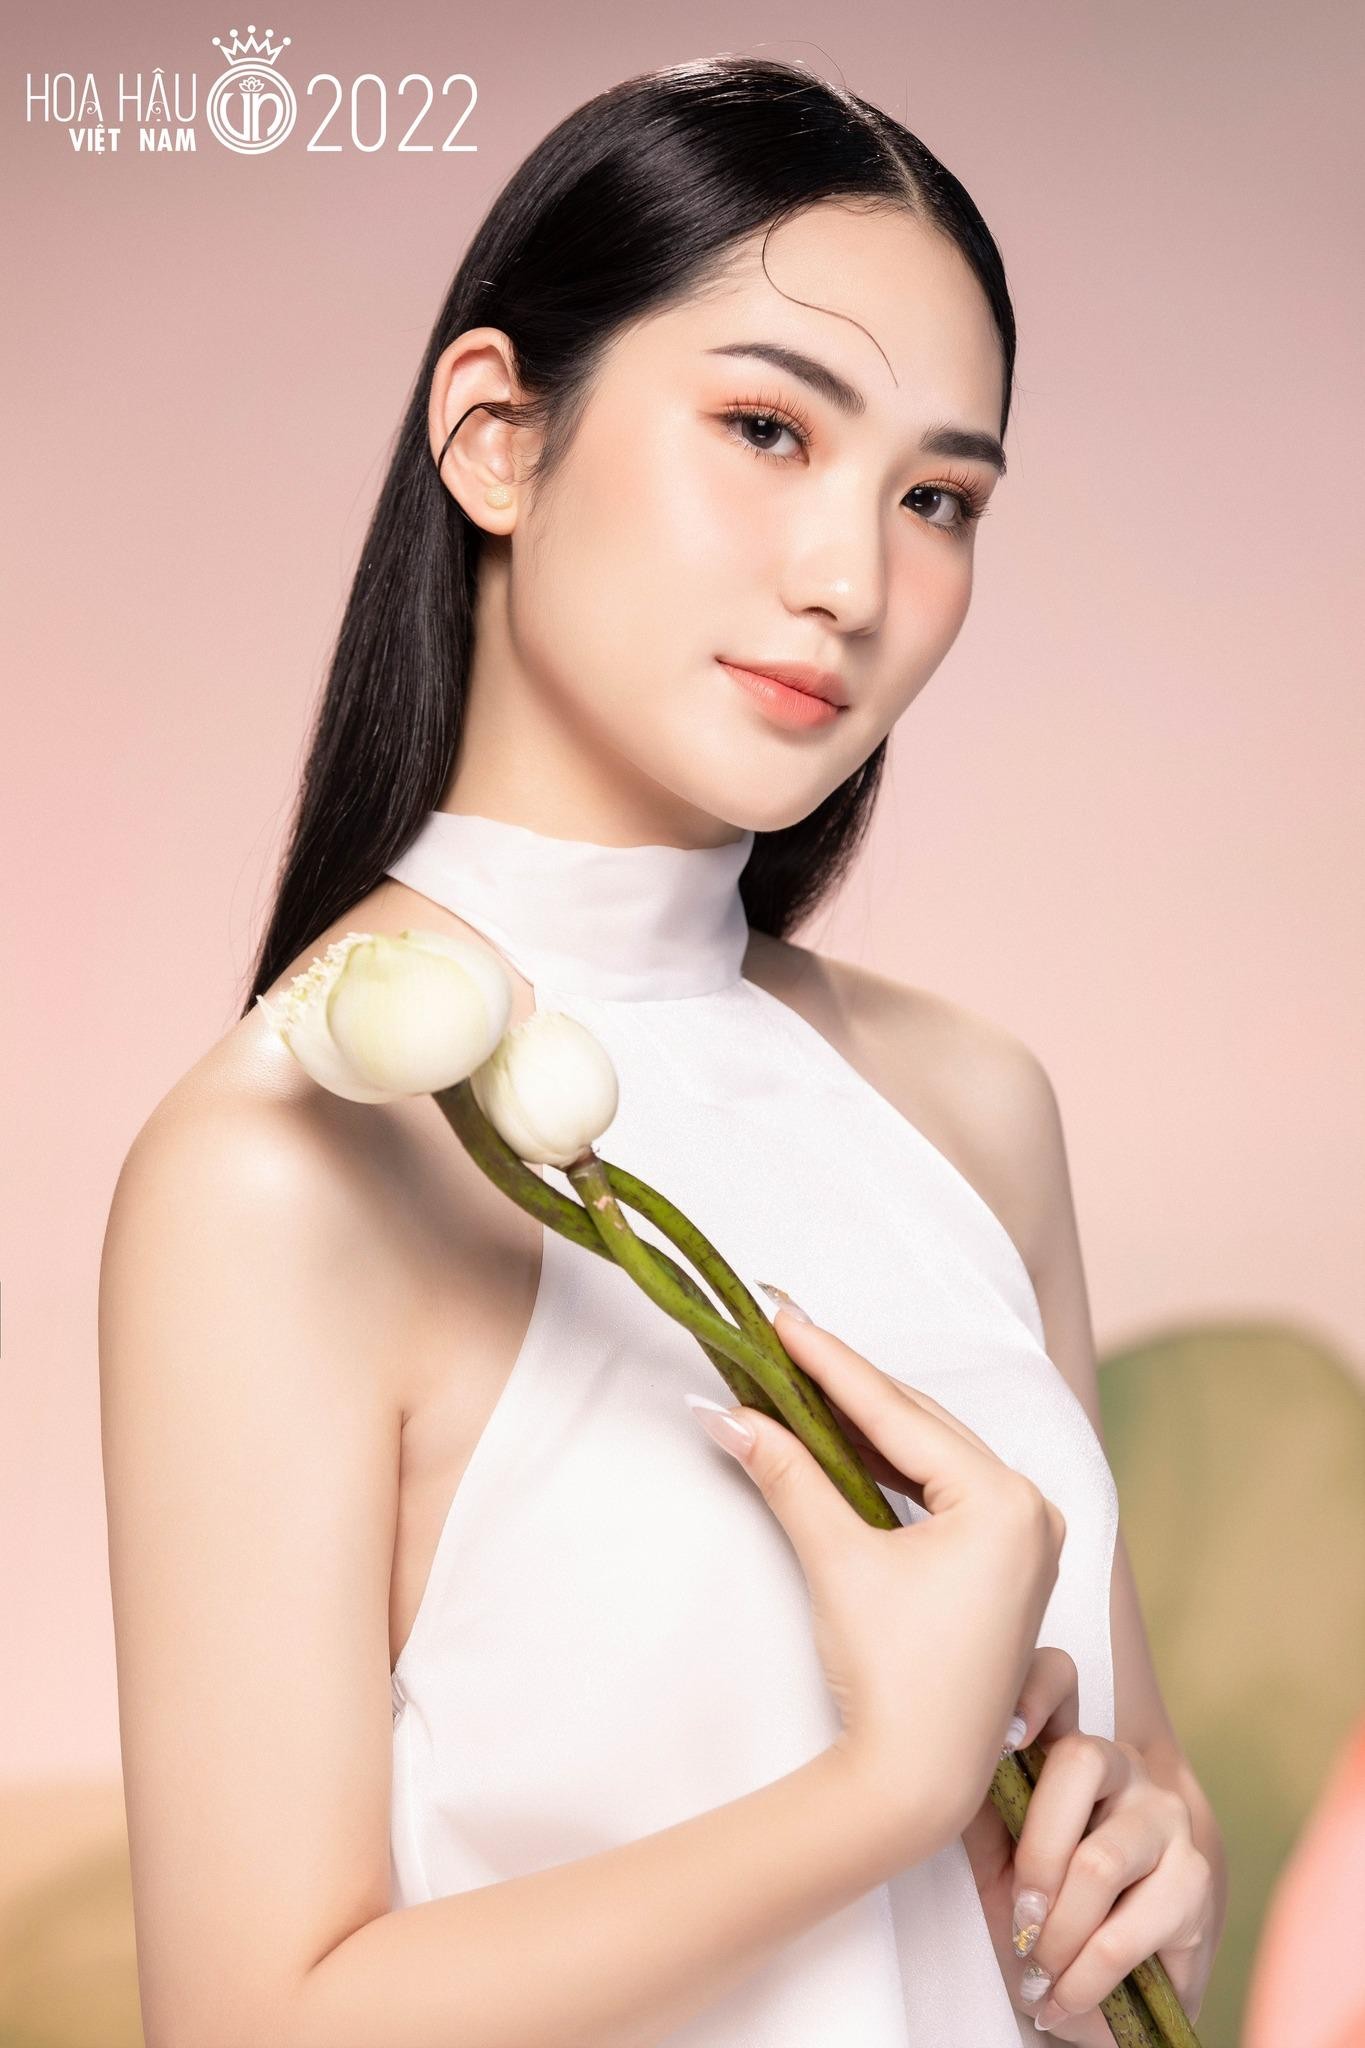 Nhan sắc cận của thí sinh Hoa hậu Việt Nam 2022 - Ảnh 19.